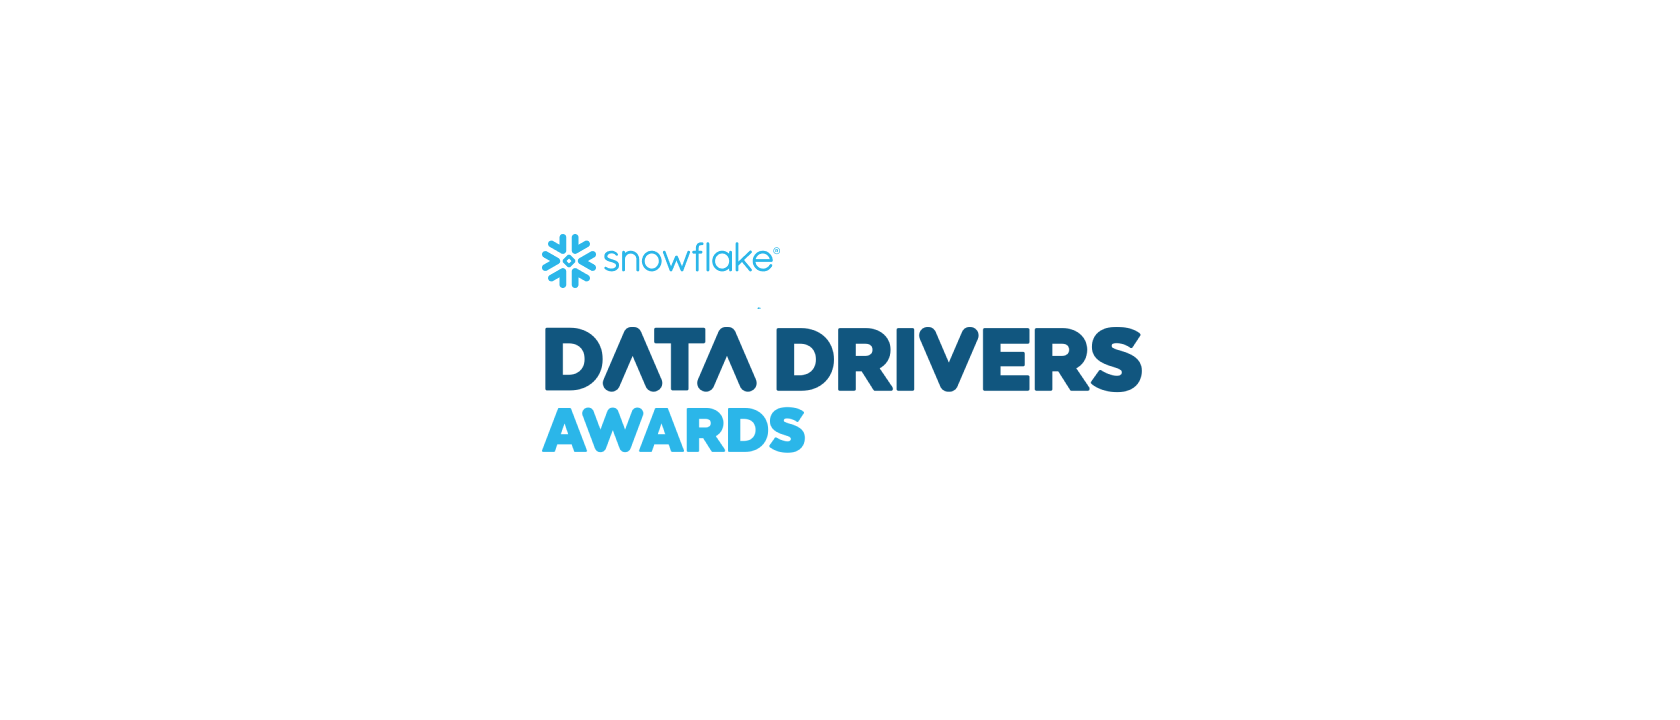 Snowflake premia l’innovazione e l’eccellenza con i Data Drivers Awards